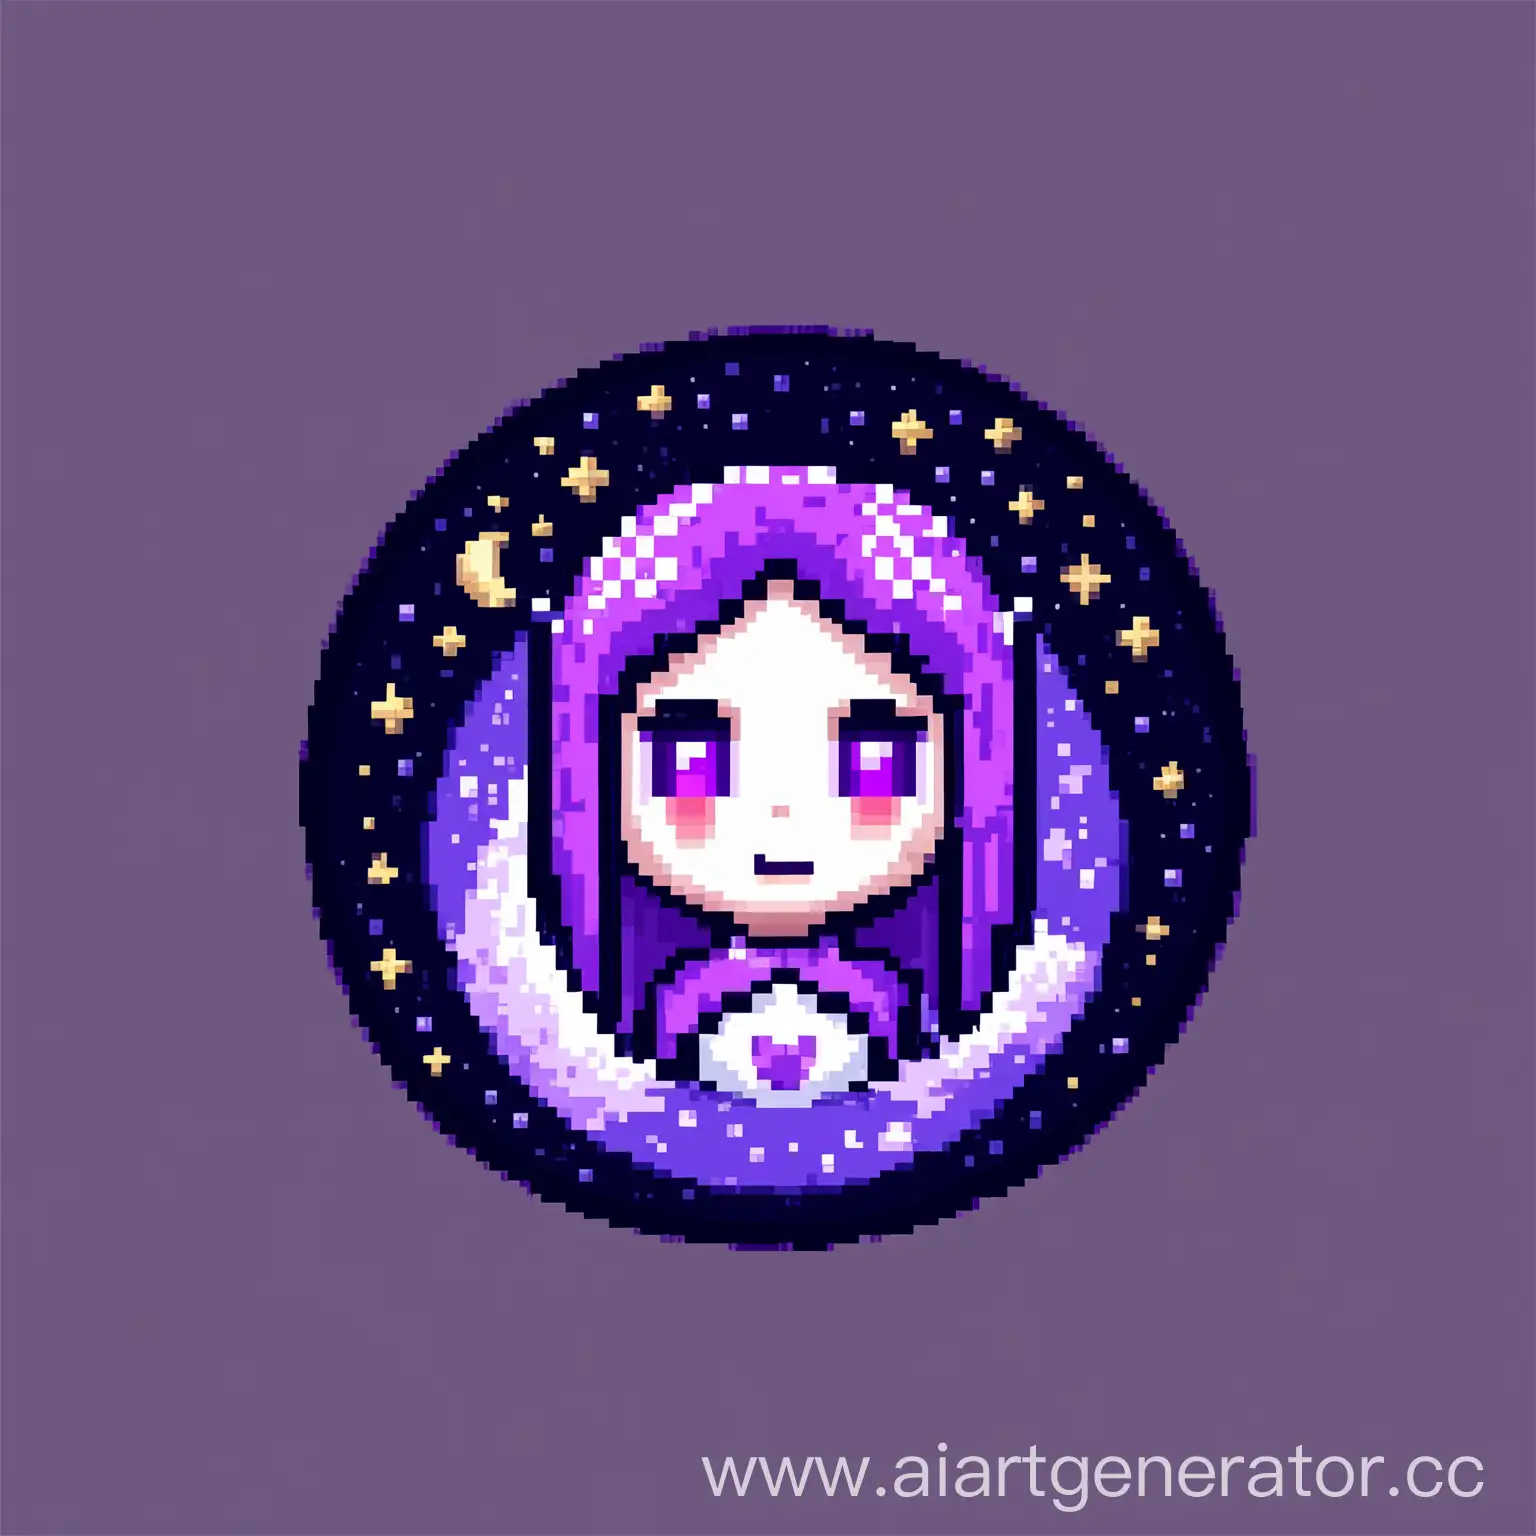 нарисуй иконку персонажа связанного с луной в фиолетовом стиле, в формате 50 на 50 пикселей